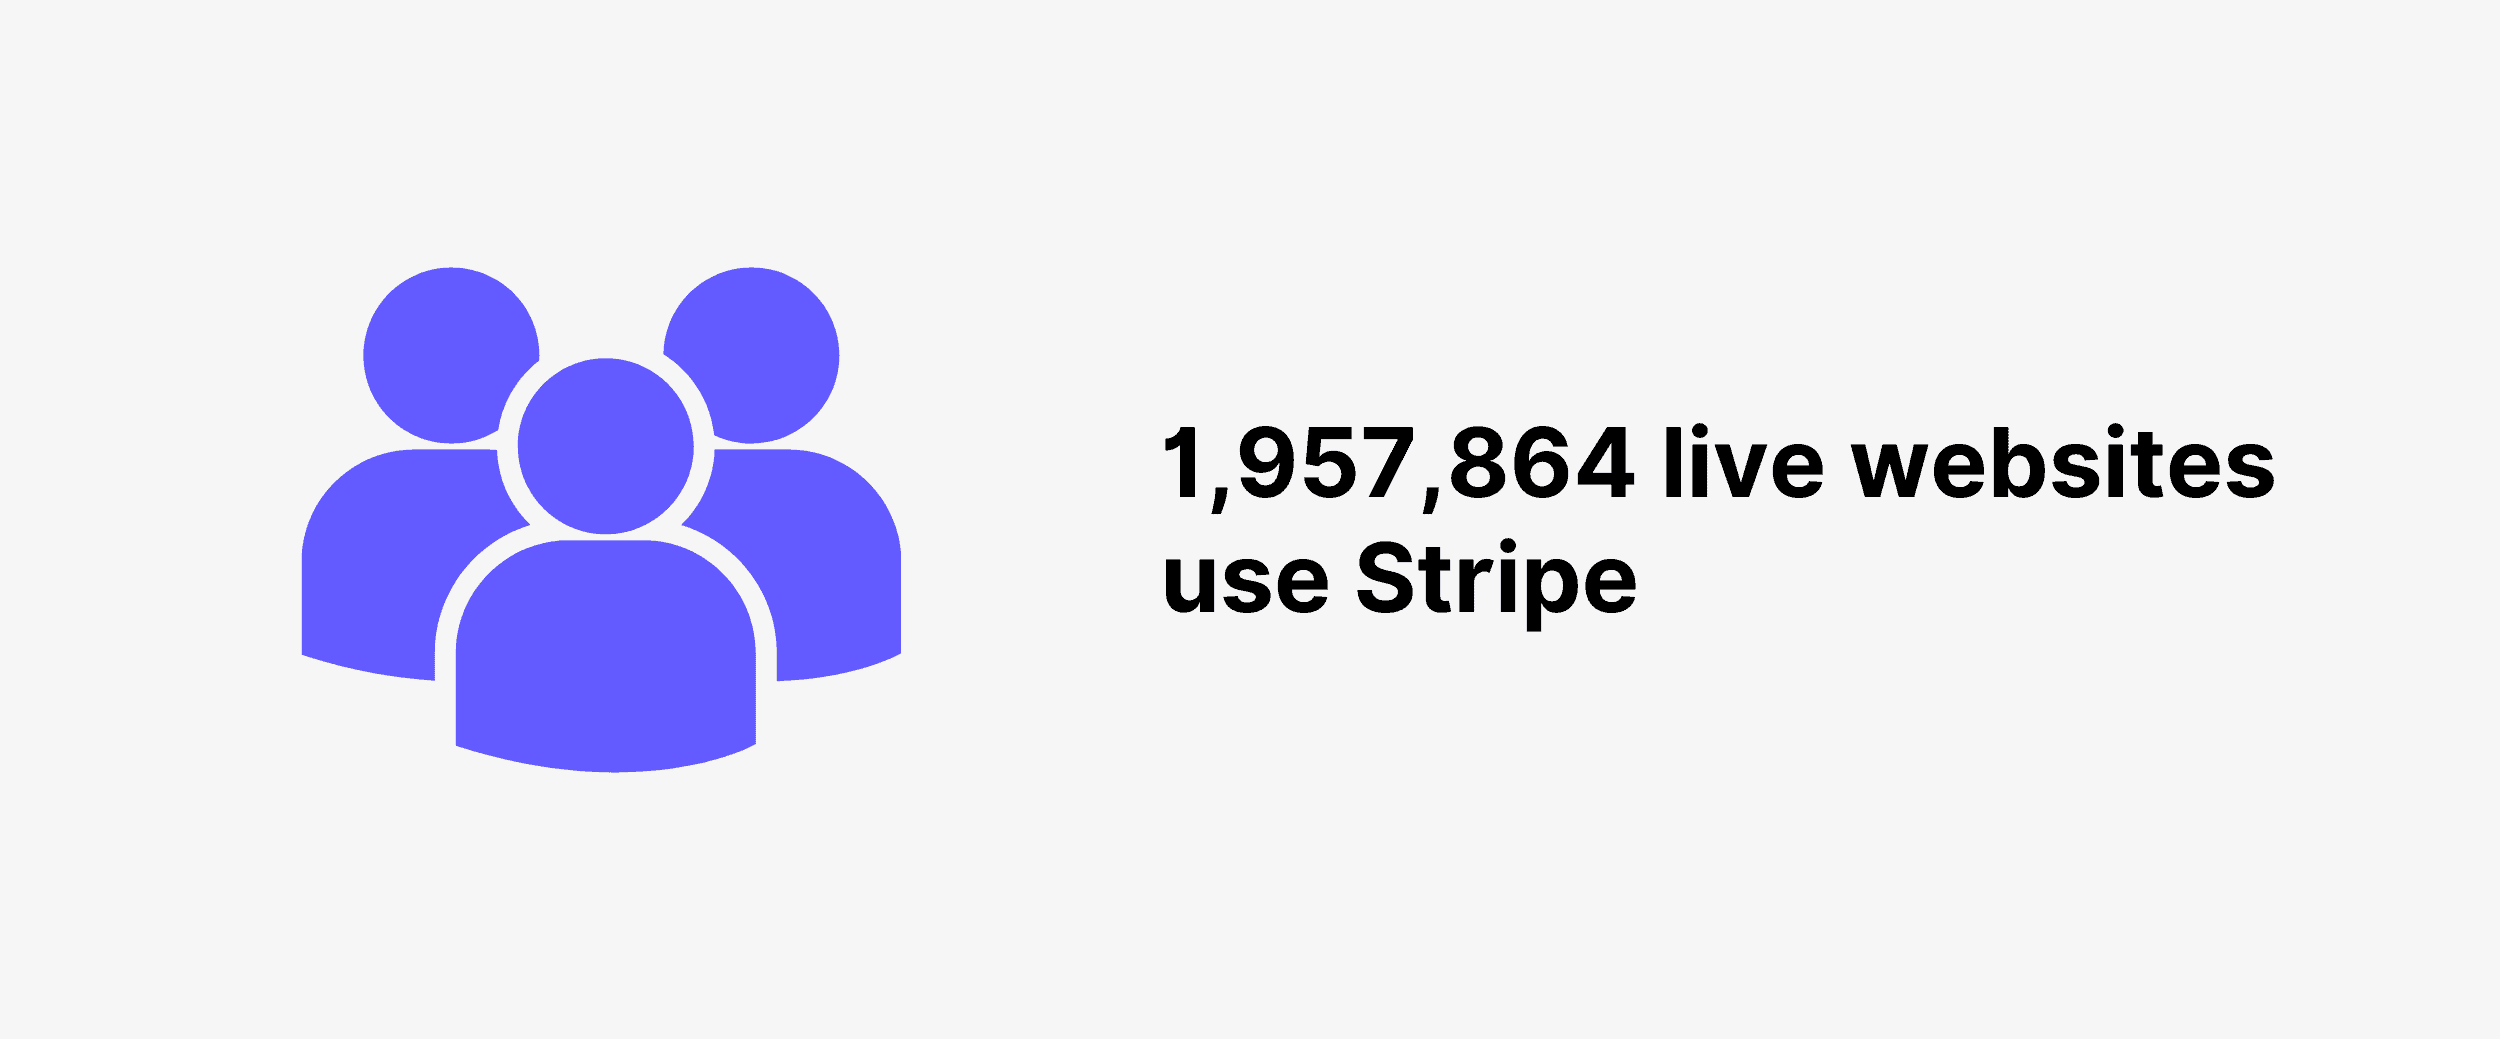 1,957,864 live websites use Stripe